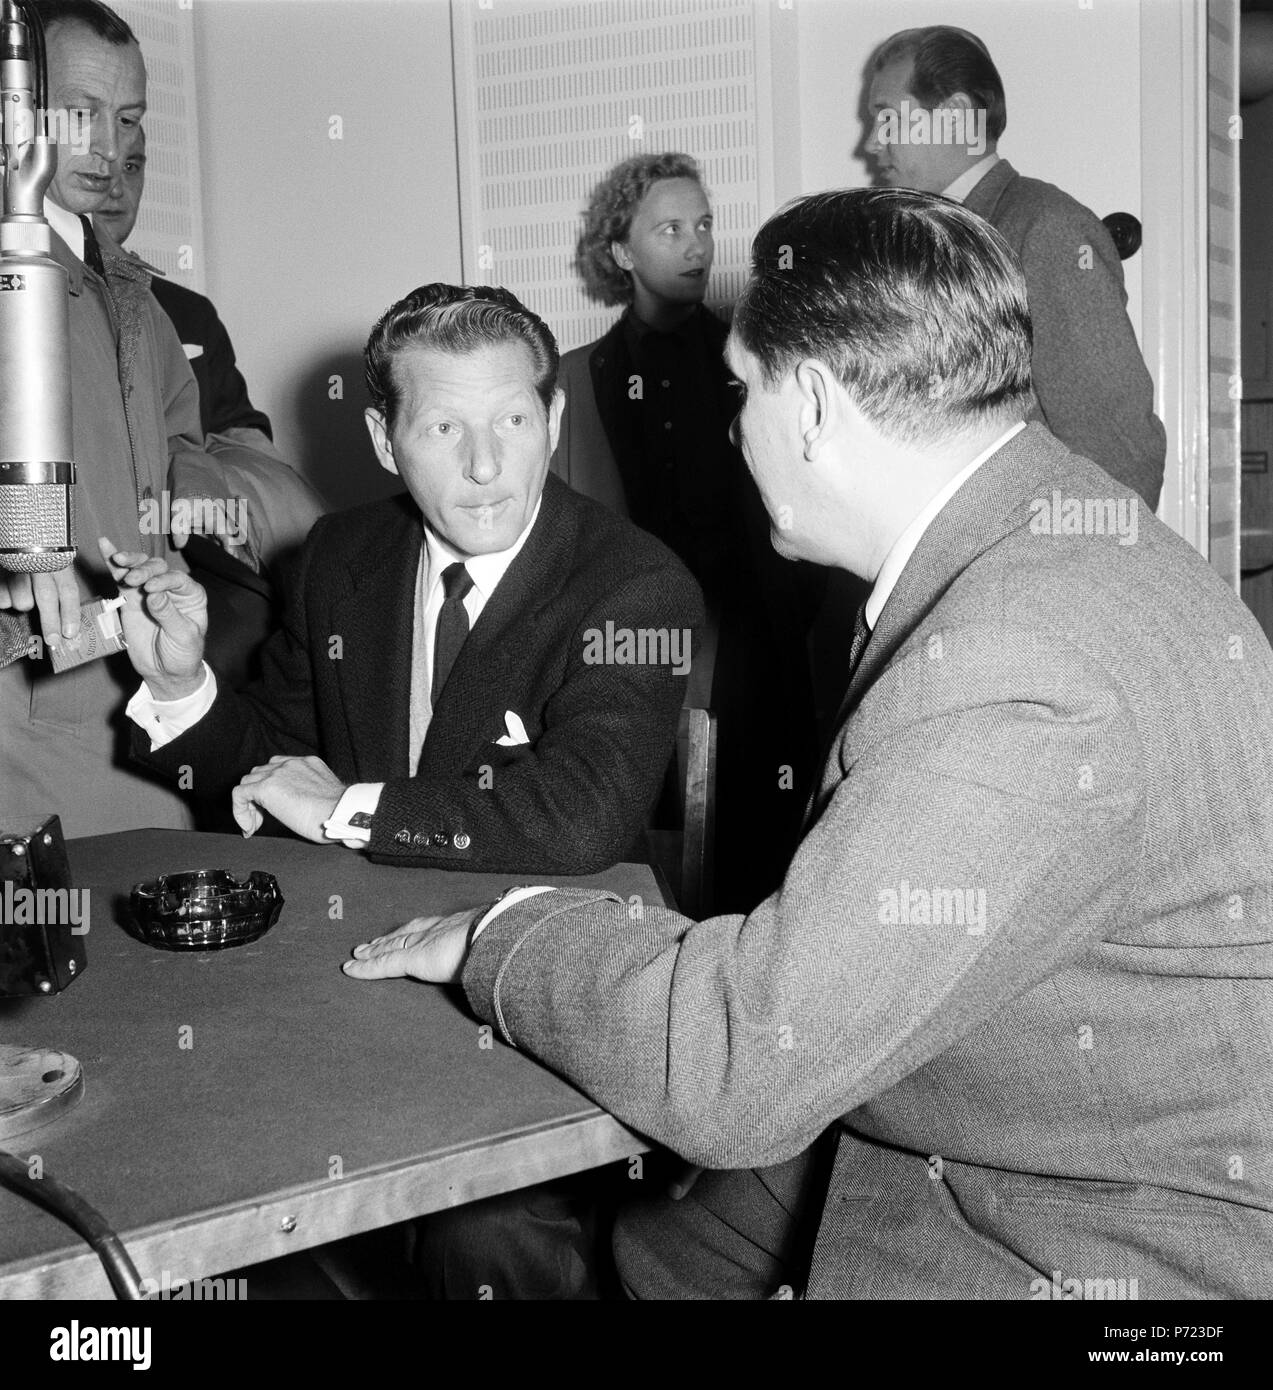 L'attore americano Danny Kaye intervistato per il finlandese della società di radiodiffusione, 1955. Foto Stock